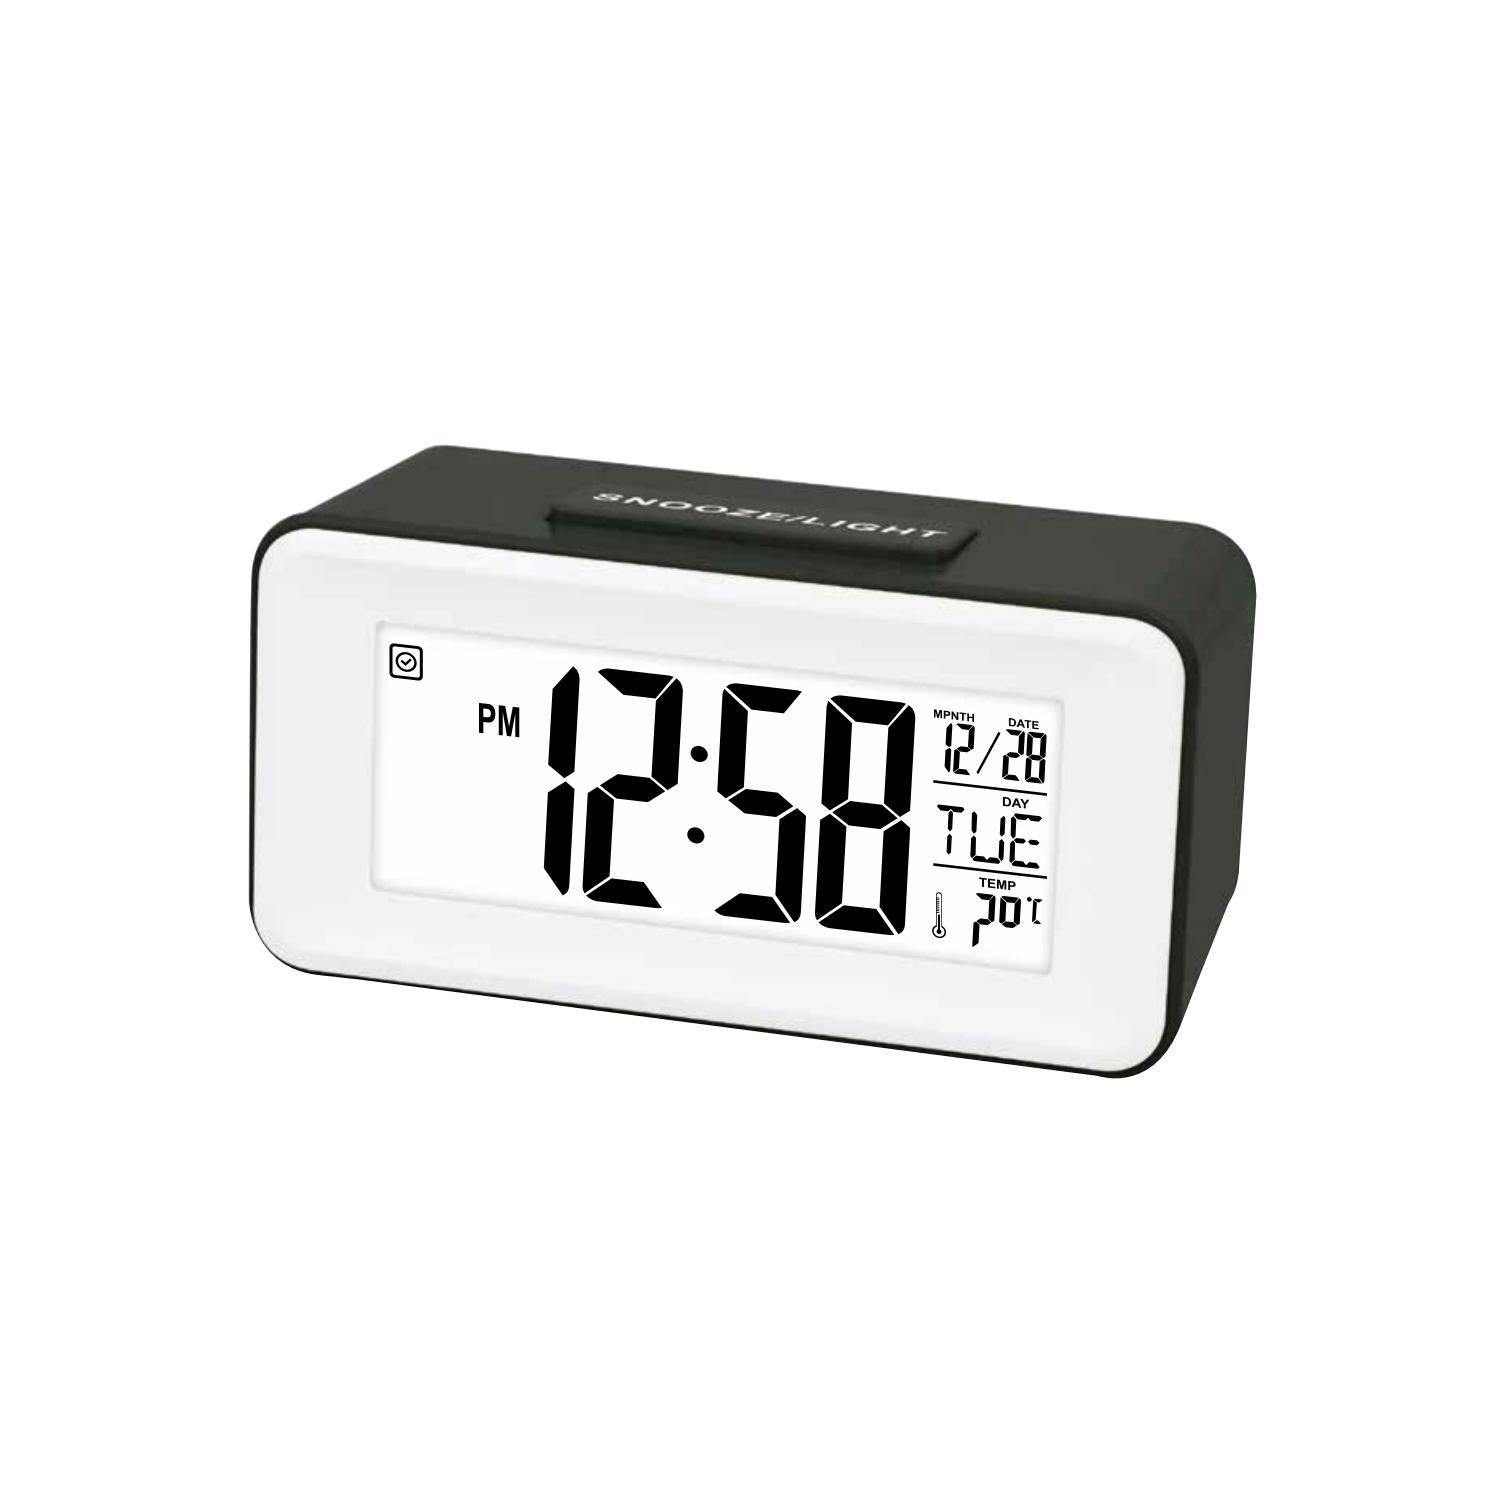 Reloj despertador digital clásico\nDespertador con pantalla LCD